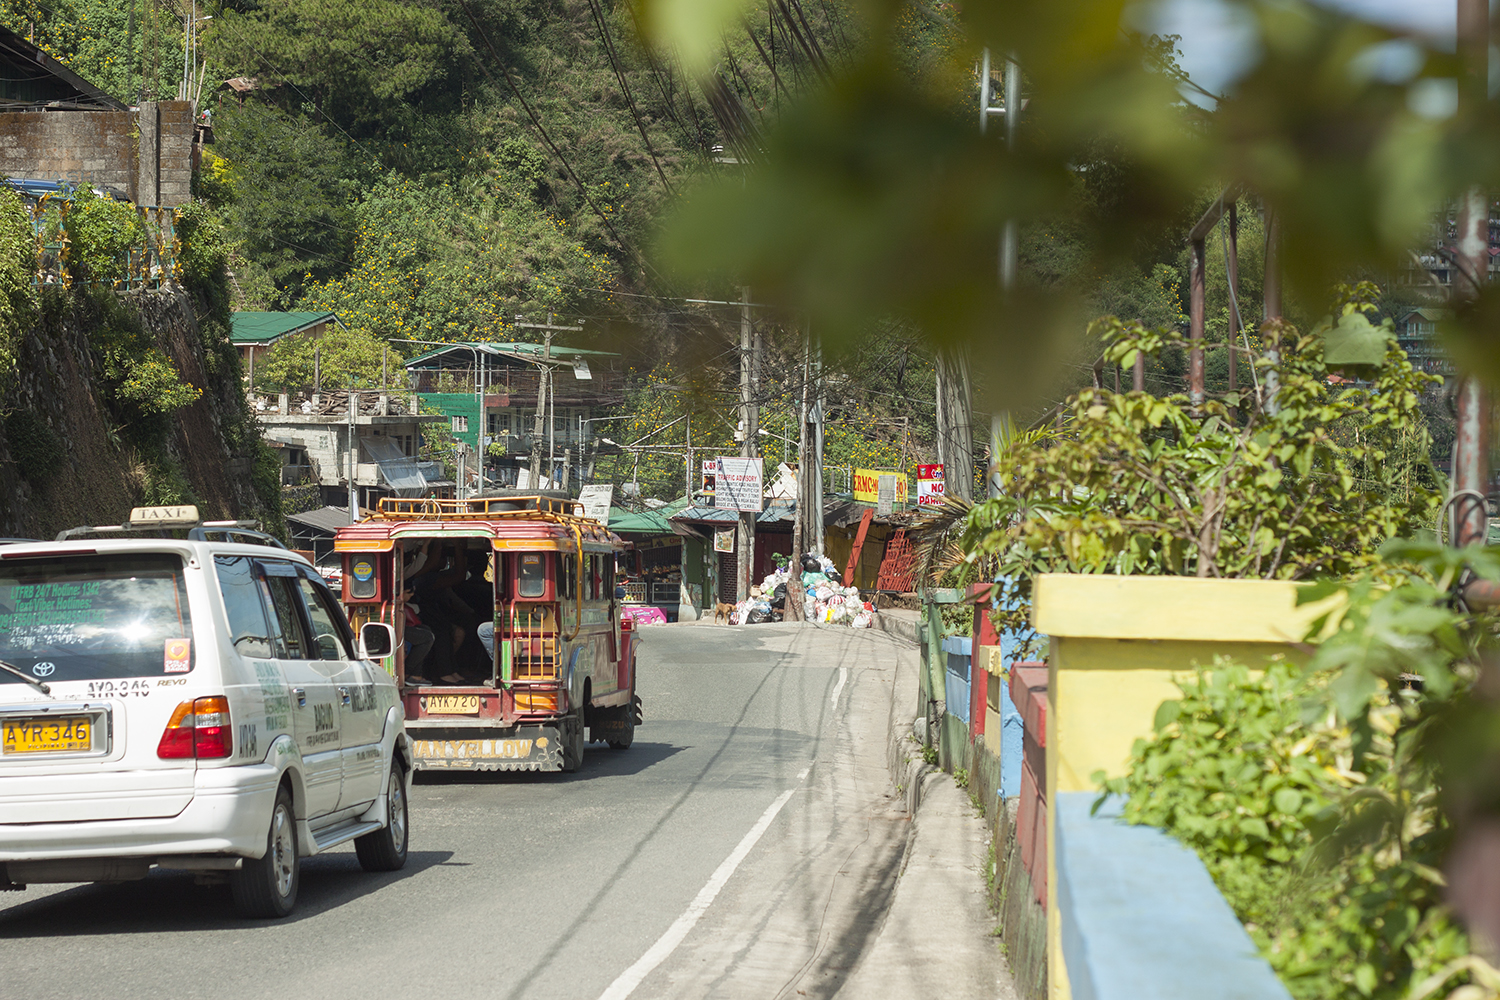 Thú vị những chiếc xe Jeepney đầy sắc màu ở Philippines - 12